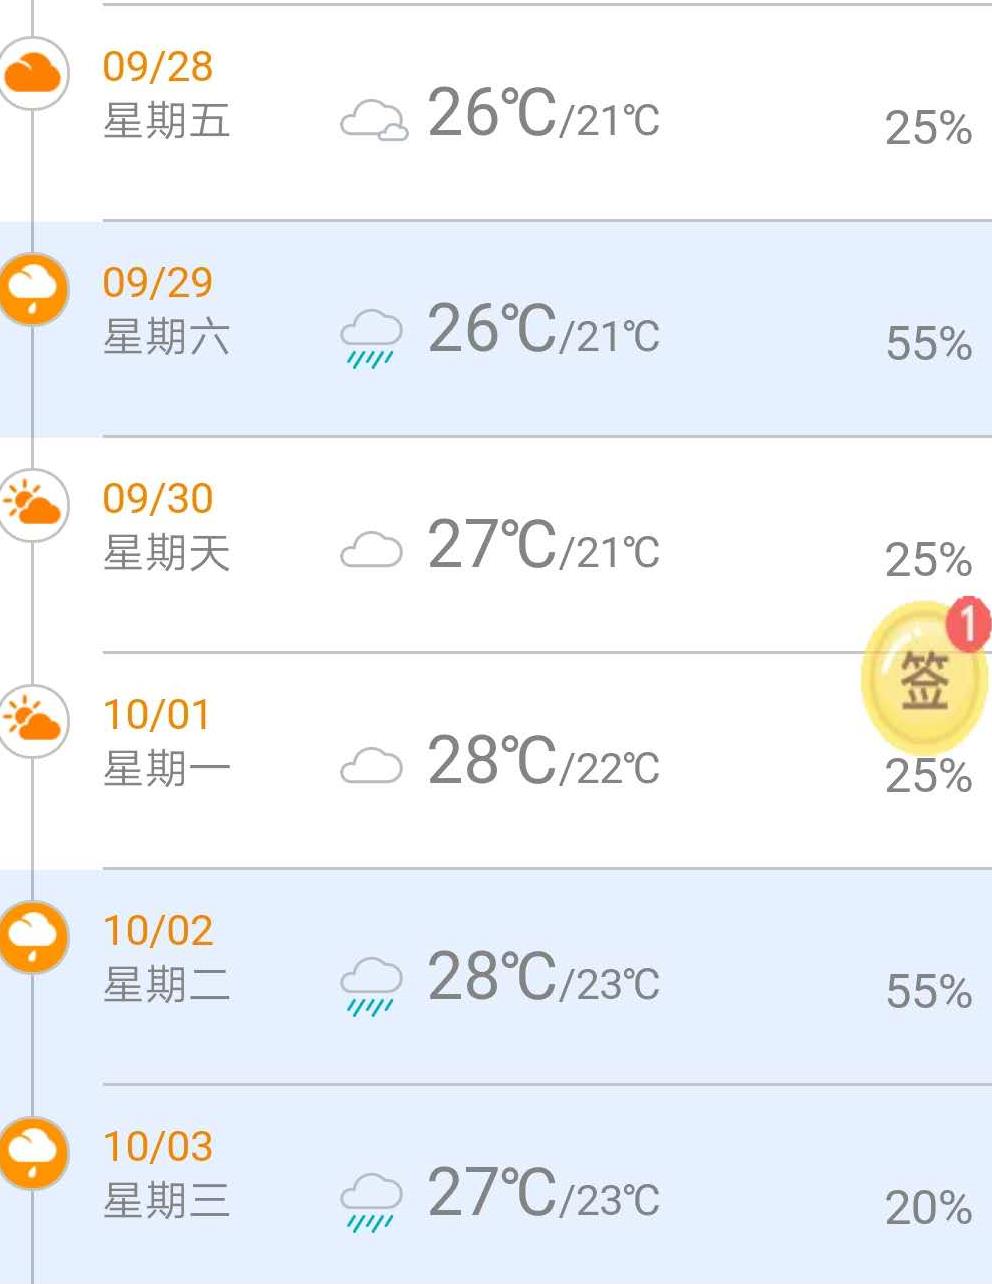 2018年厦门中秋节天气预报及穿衣指数